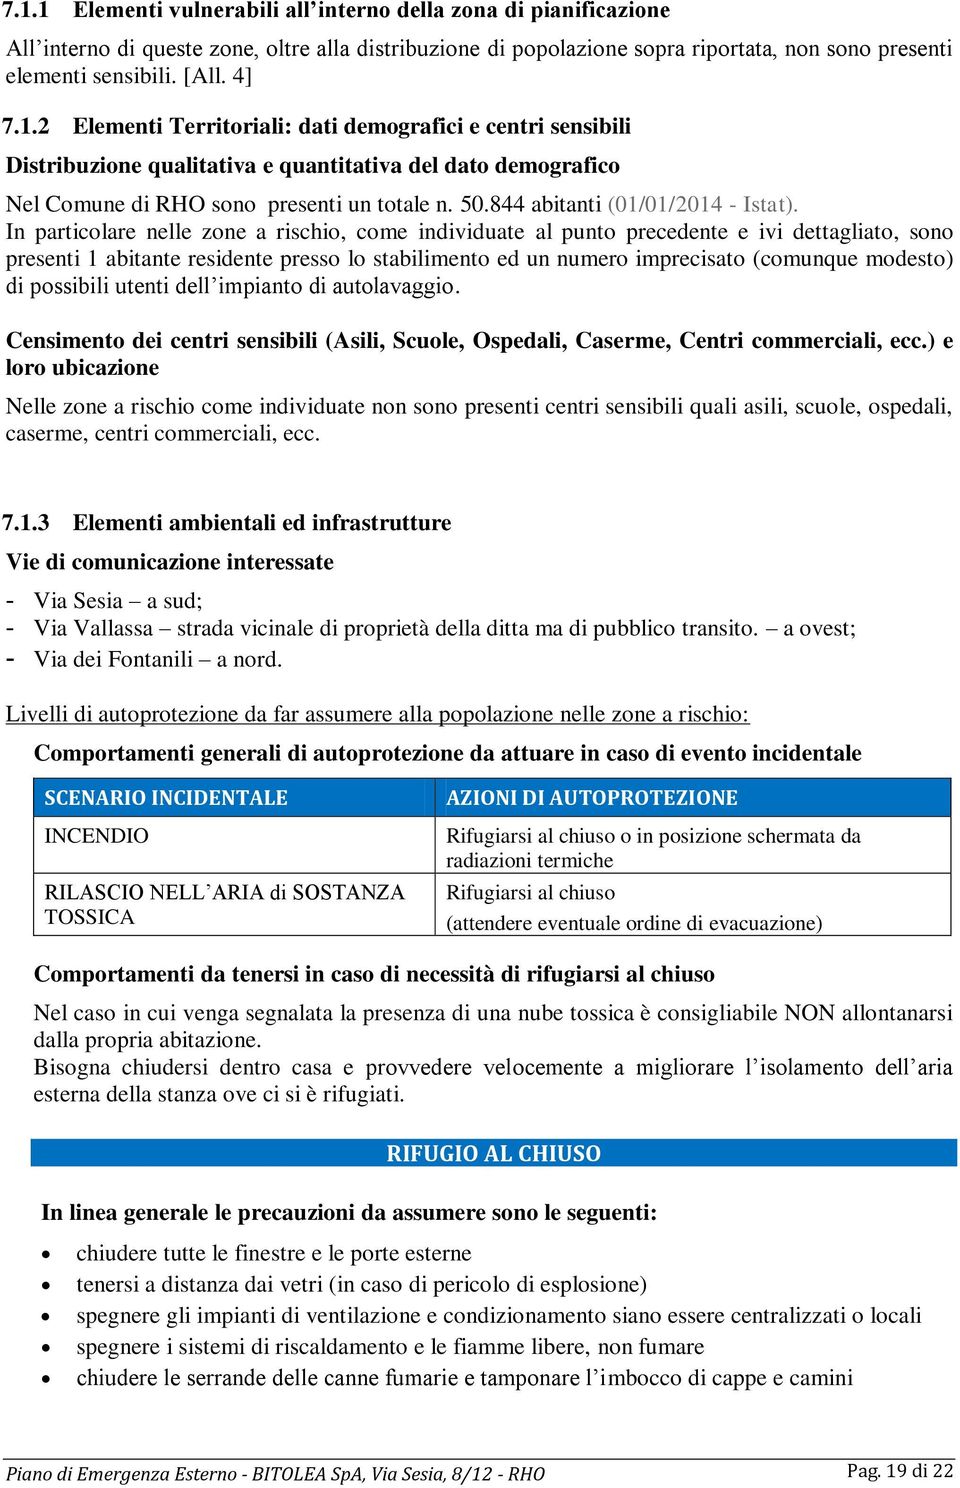 844 abitanti (01/01/2014 - Istat).